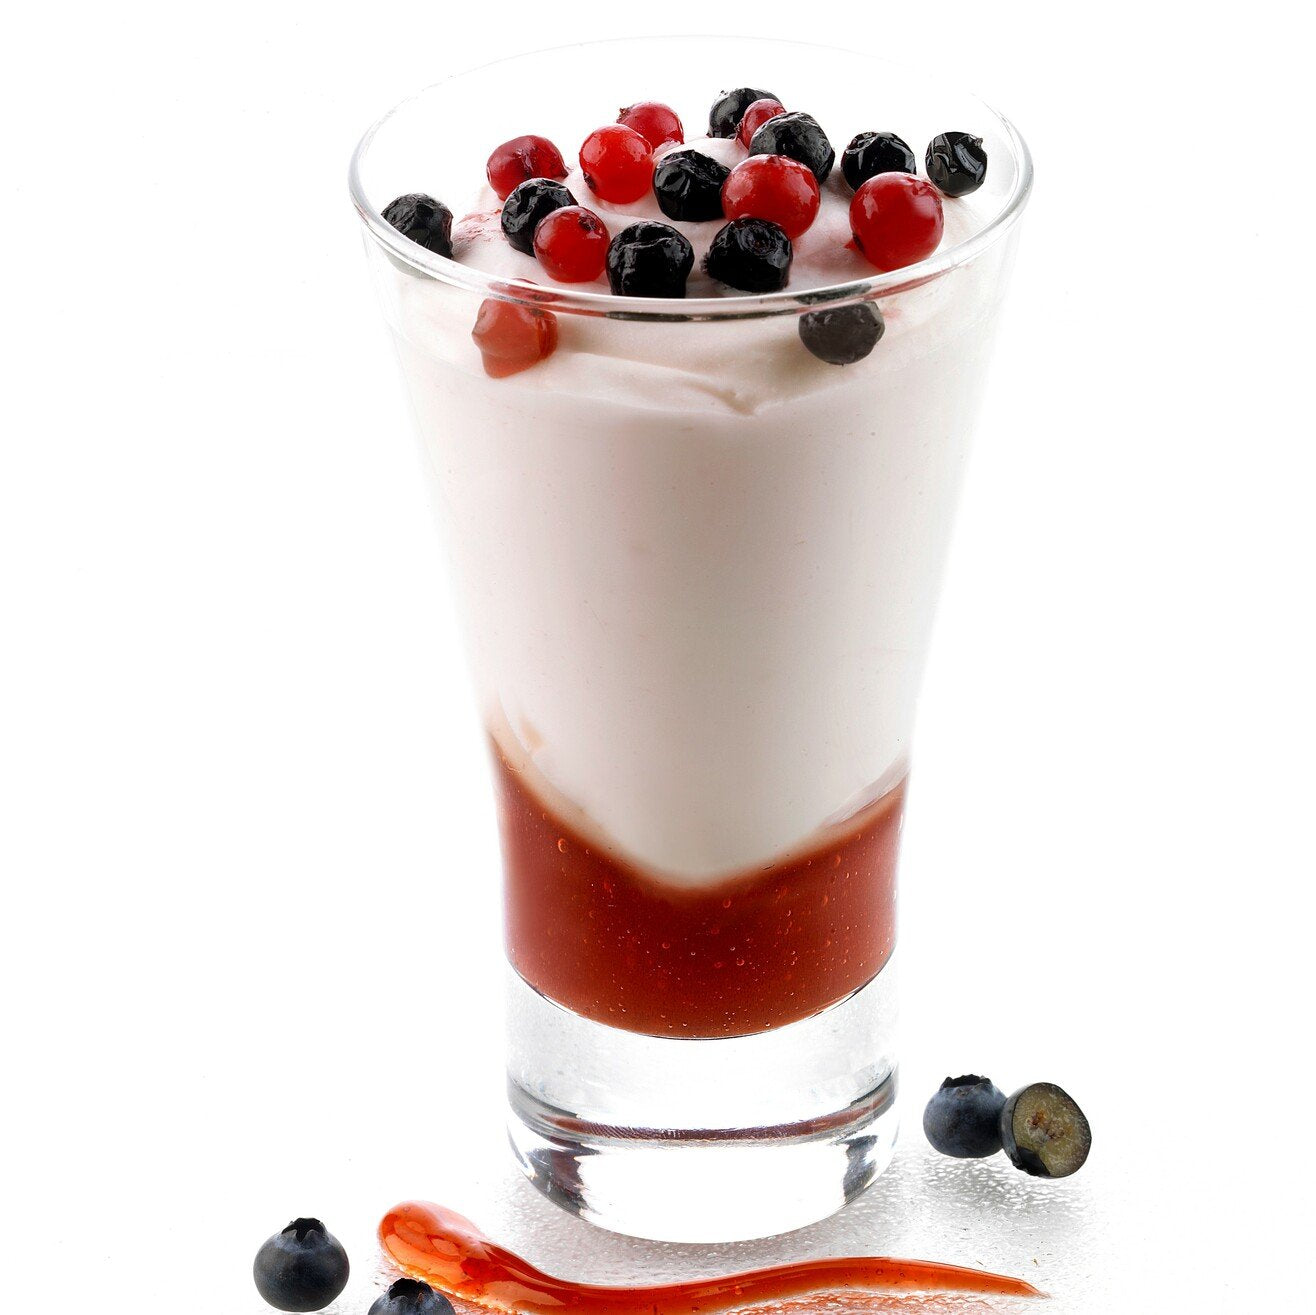 Coppa Gelato Yogurt Frutti Bosco Bindi: un' elegante coppa in vetro con gelato allo yogurt con salsa alla fragola, decorata con mirtilli e ribes.